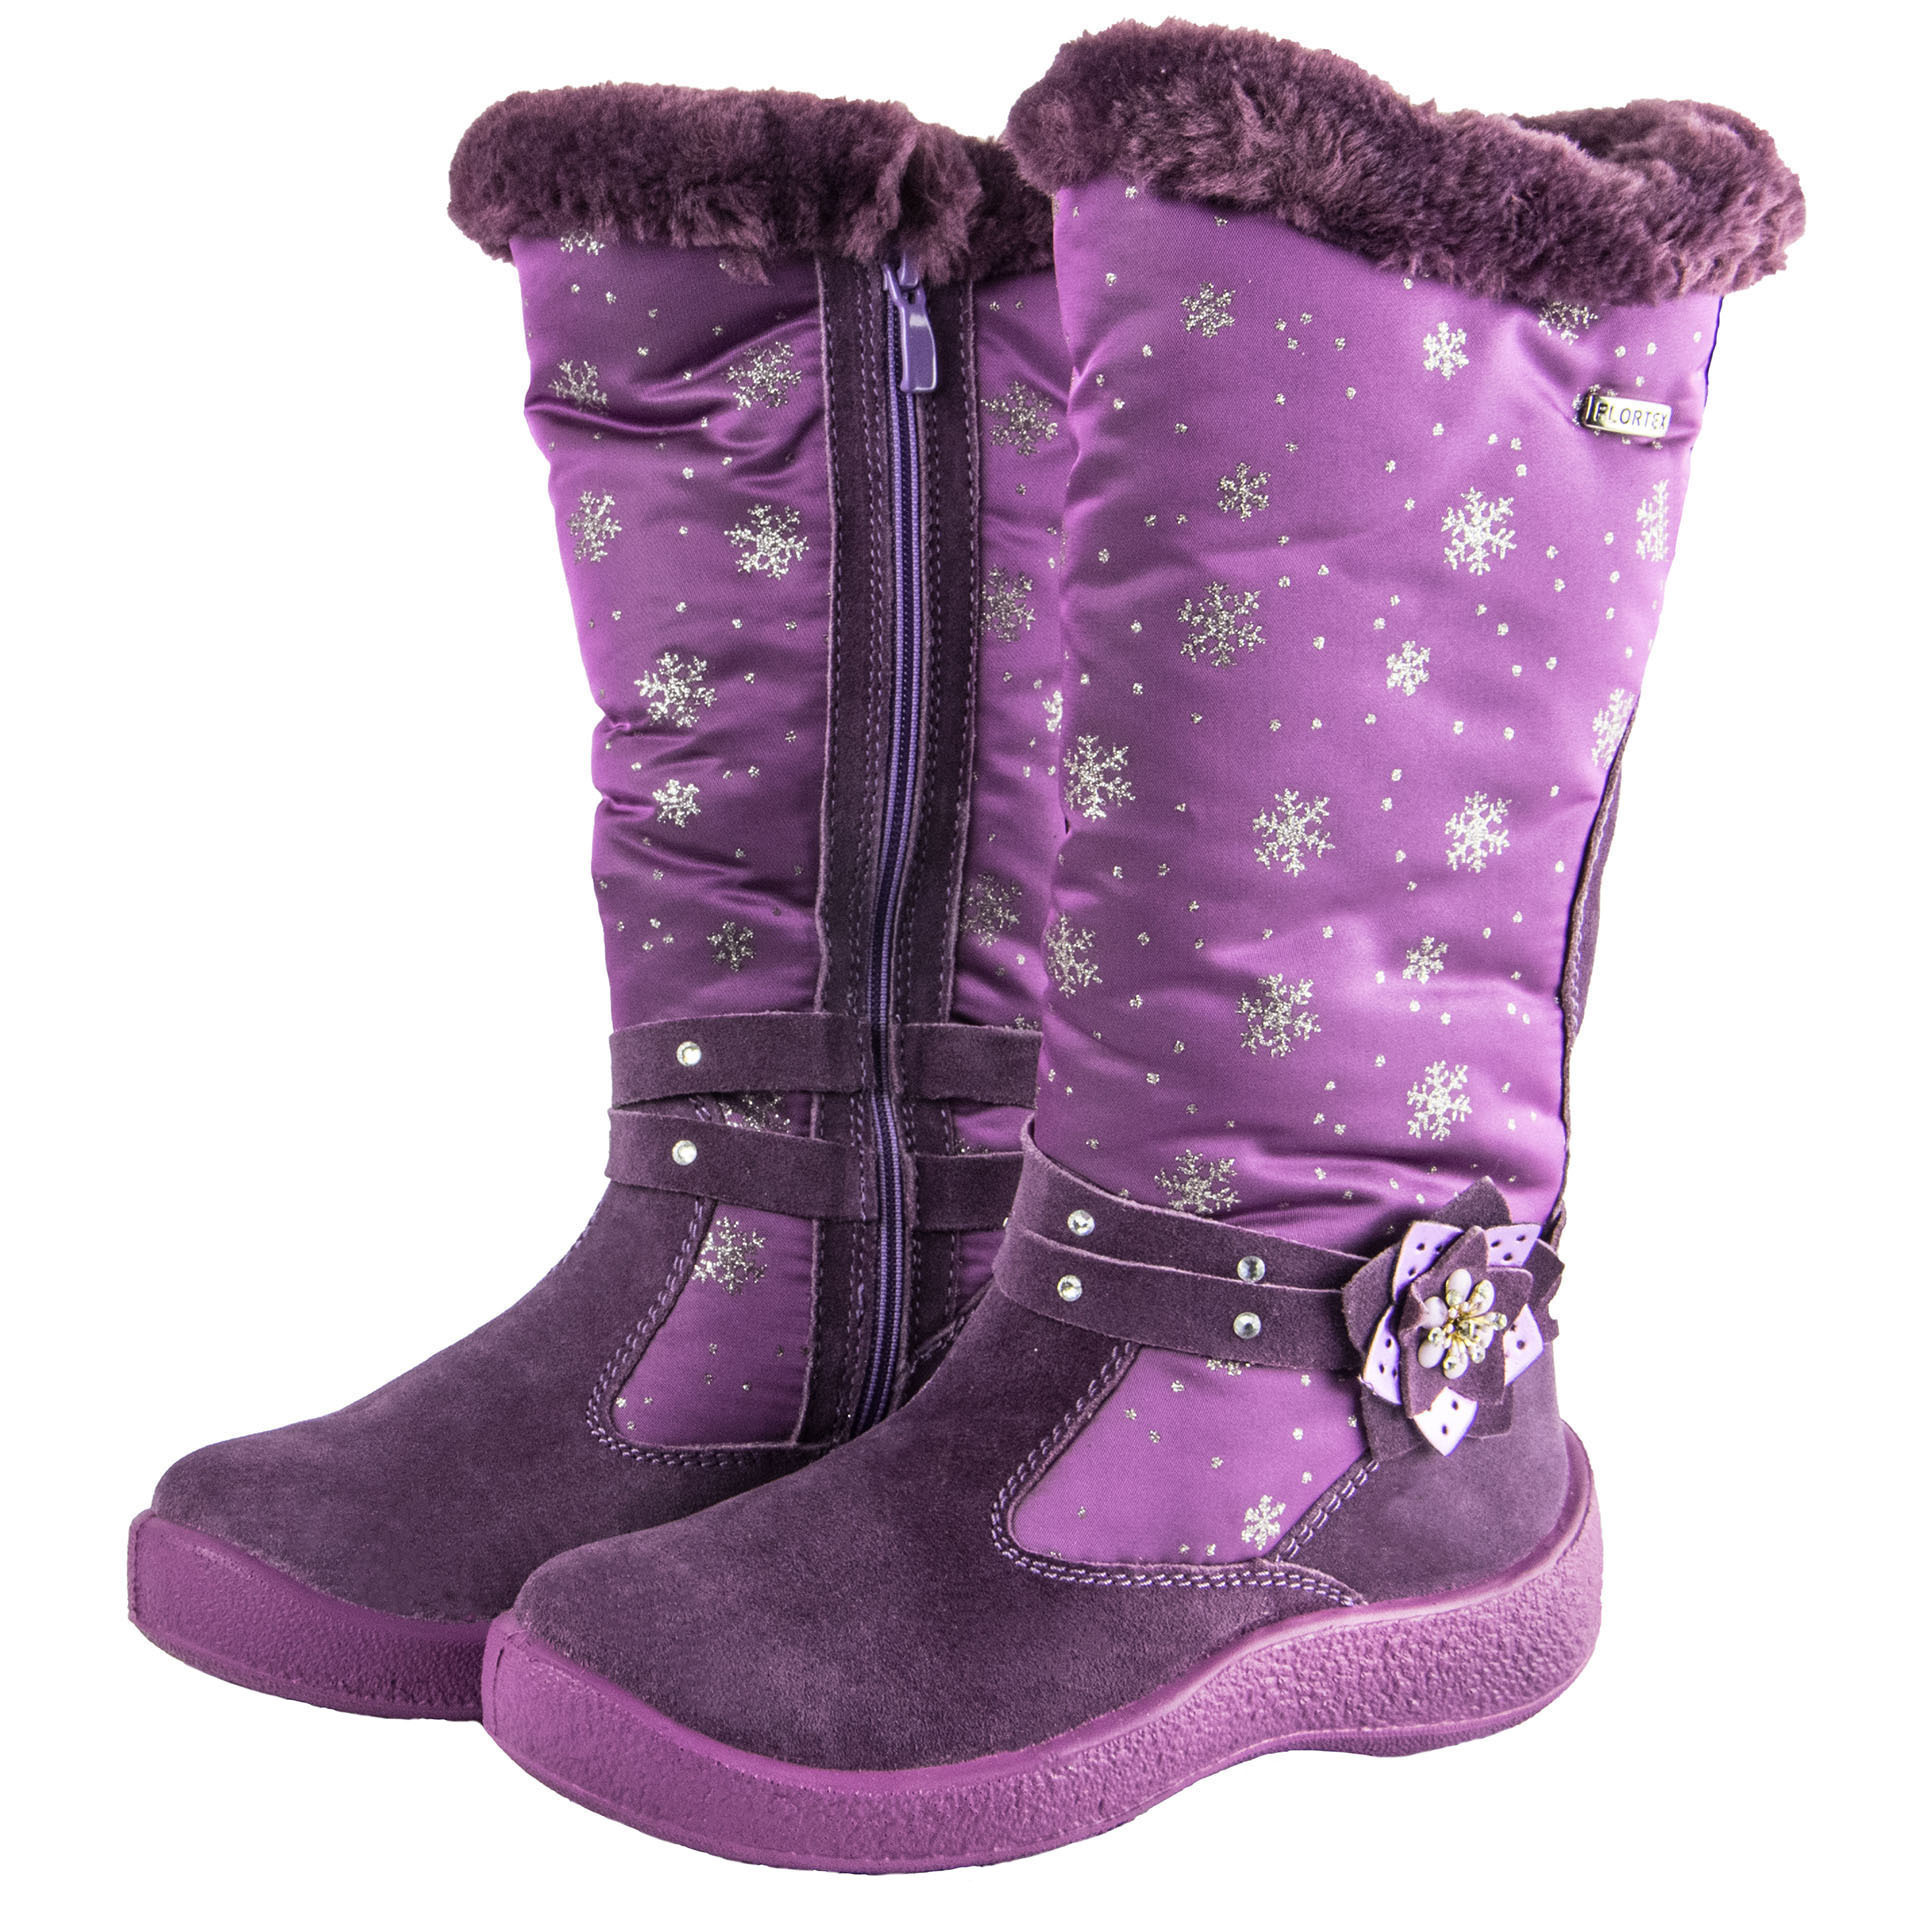 Зимние сапоги Floare (1321) материал Мембрана, цвет Фиолетовый  для девочки 31-36 размеры. Фото 2